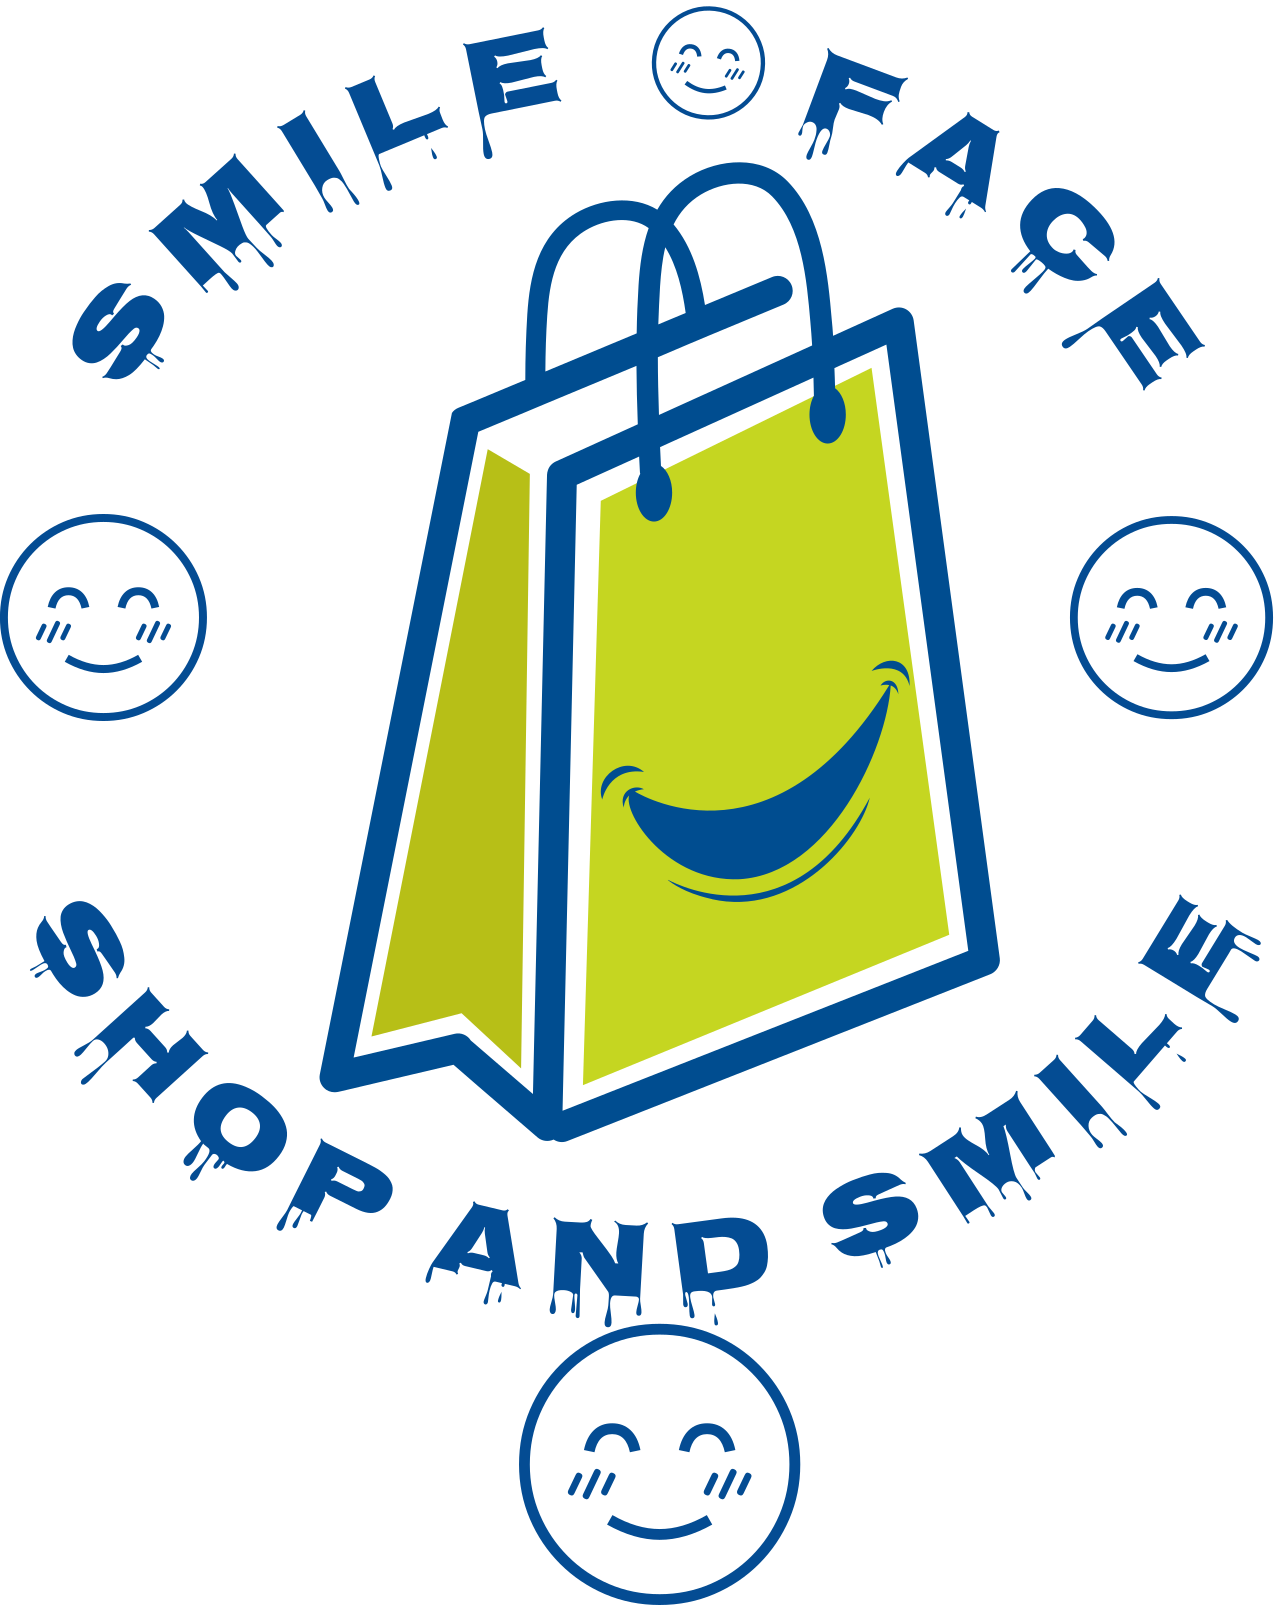 Smile Face LLC's logo